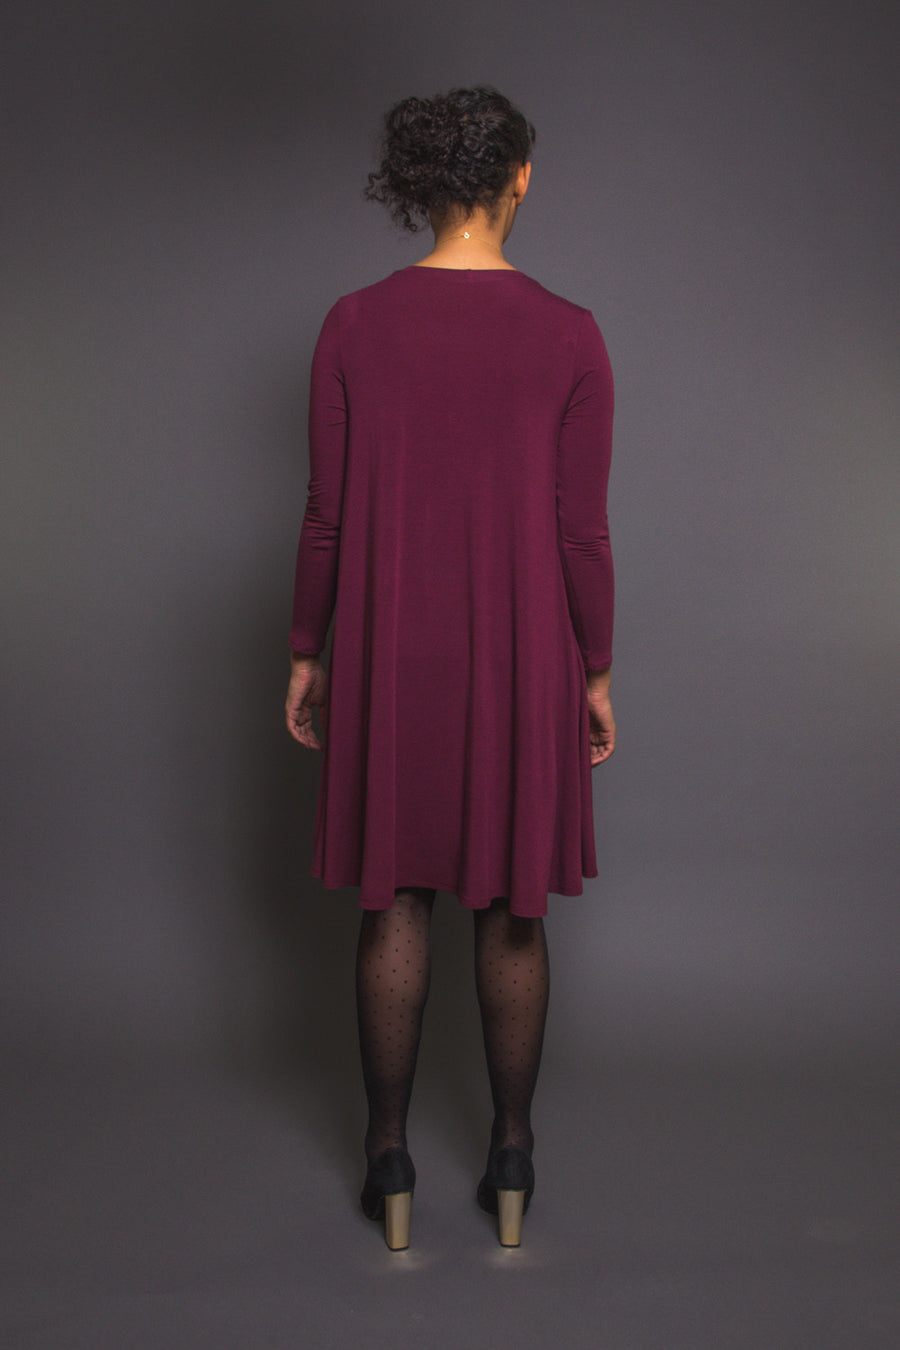 Ebony Tee Pattern // Knit Dress Pattern - back // Closet Core Patterns